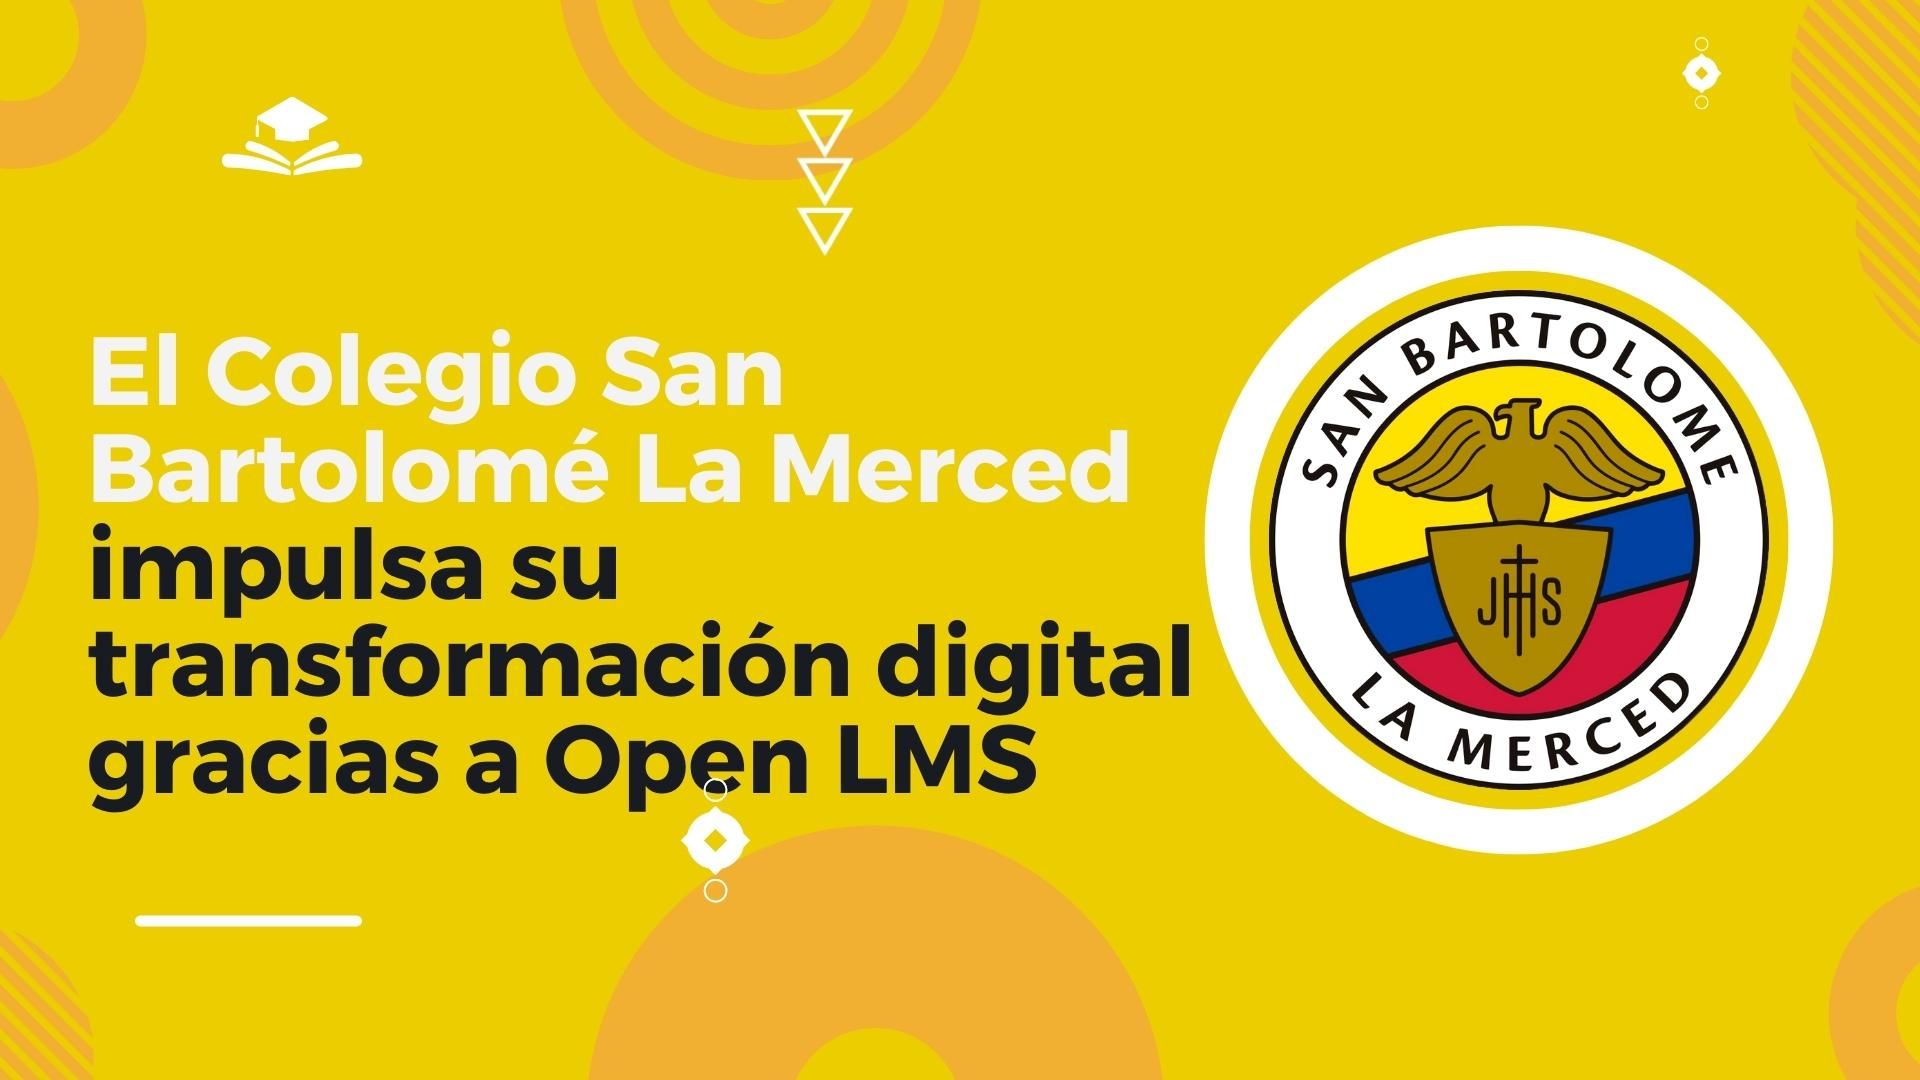 El Colegio San Bartolomé La Merced impulsa su transformación digital gracias a Open LMS